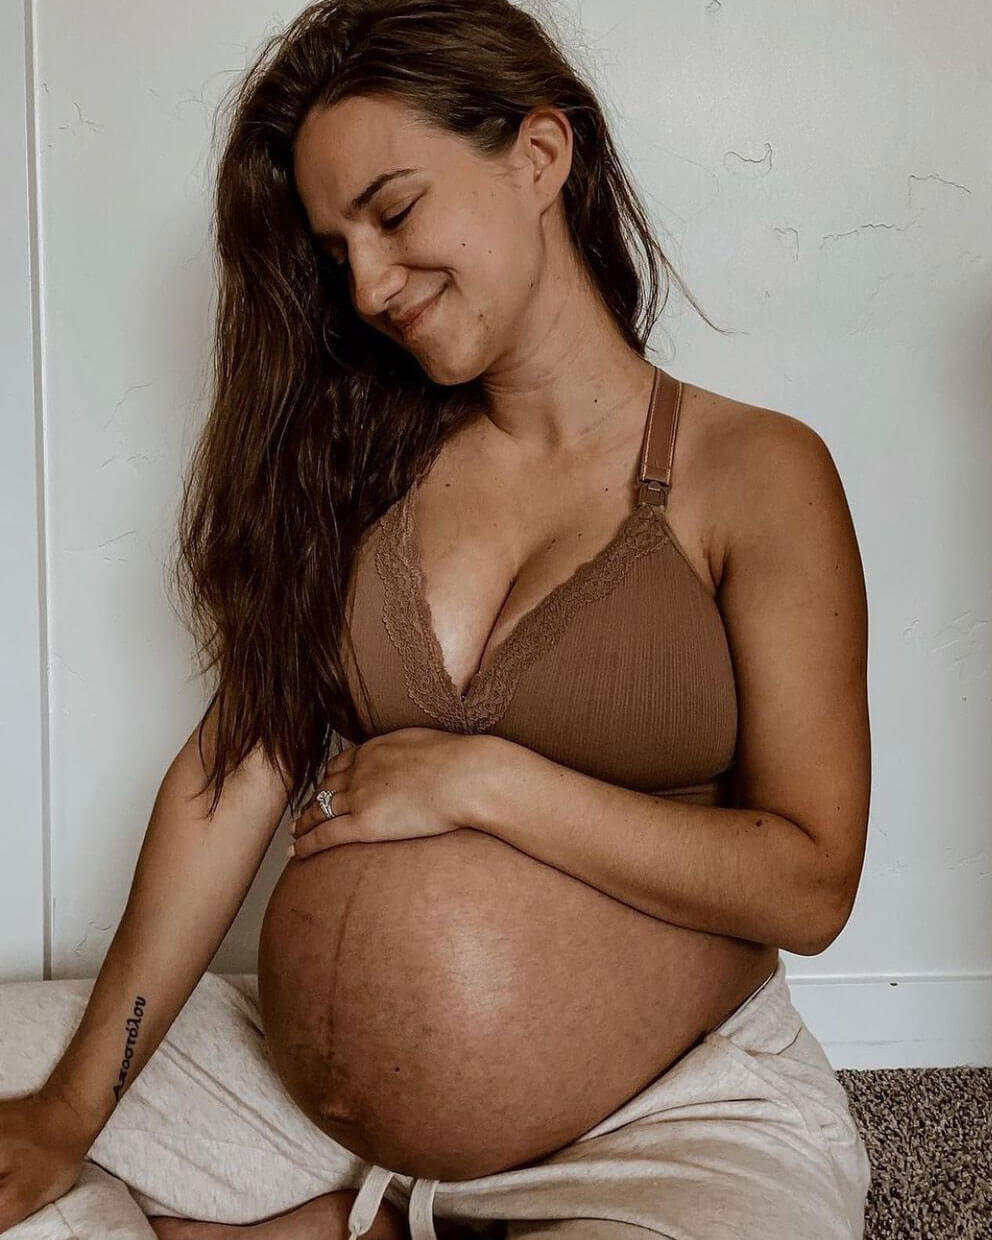 pregnant woman wearing a nursing bra